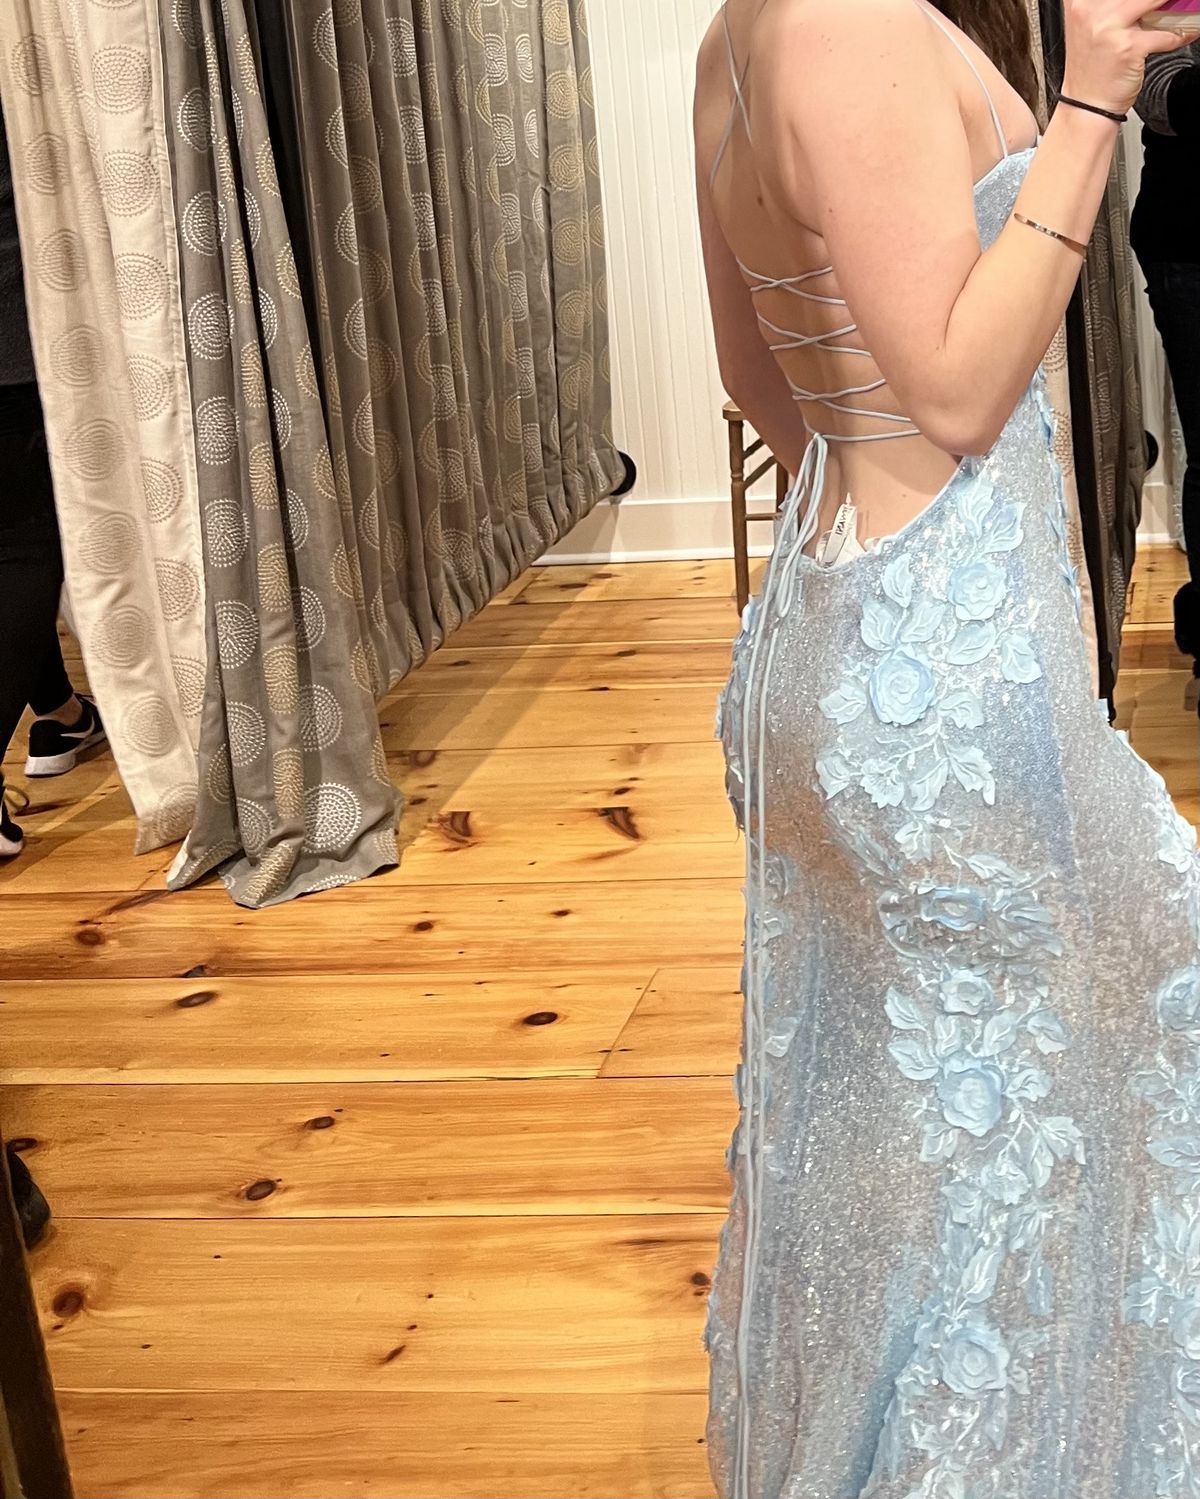 Jovani Size 2 Prom Plunge Blue Side Slit Dress on Queenly